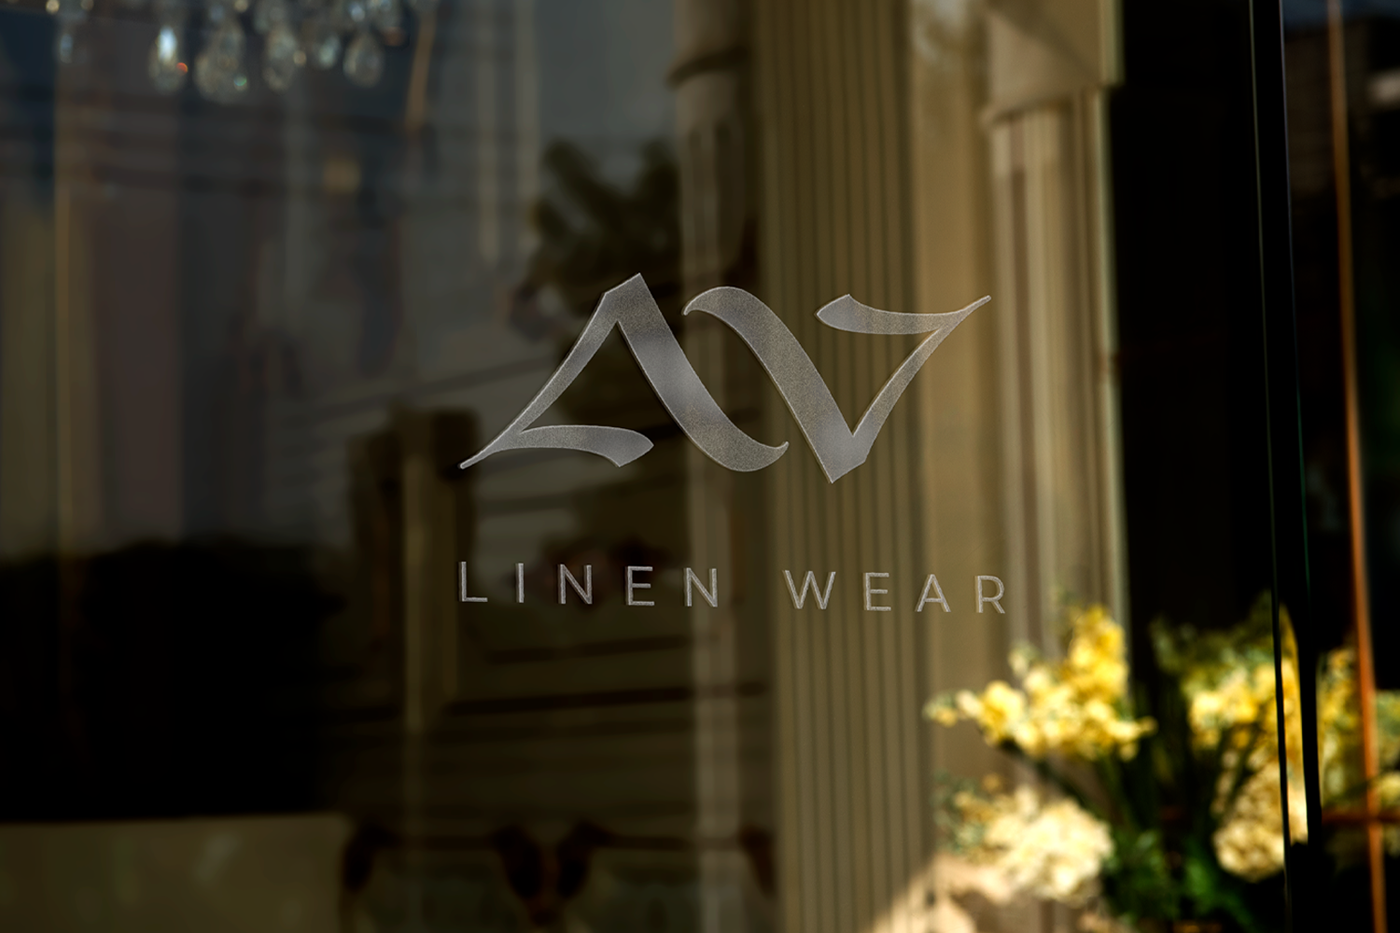 Фирменный стиль бренда одежды
Branding for a fashion brand
Logo fashion
Логотип одежды